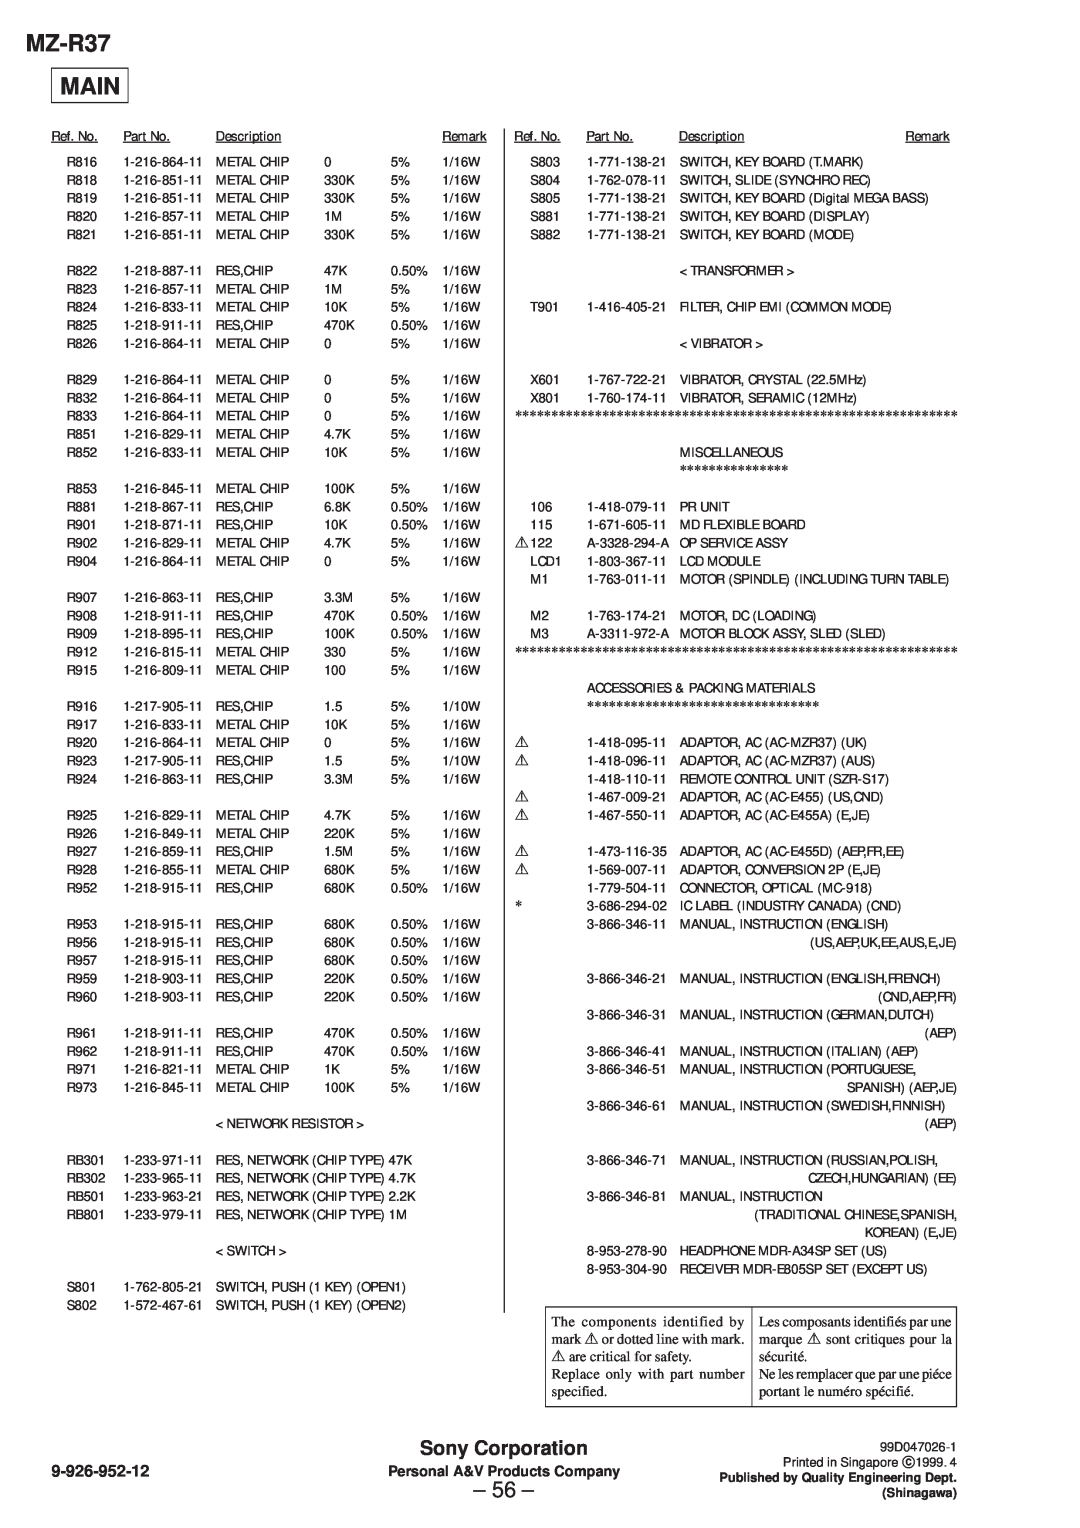 Sony specifications MZ-R37 MAIN, 56, Sony Corporation, 9-926-952-12 